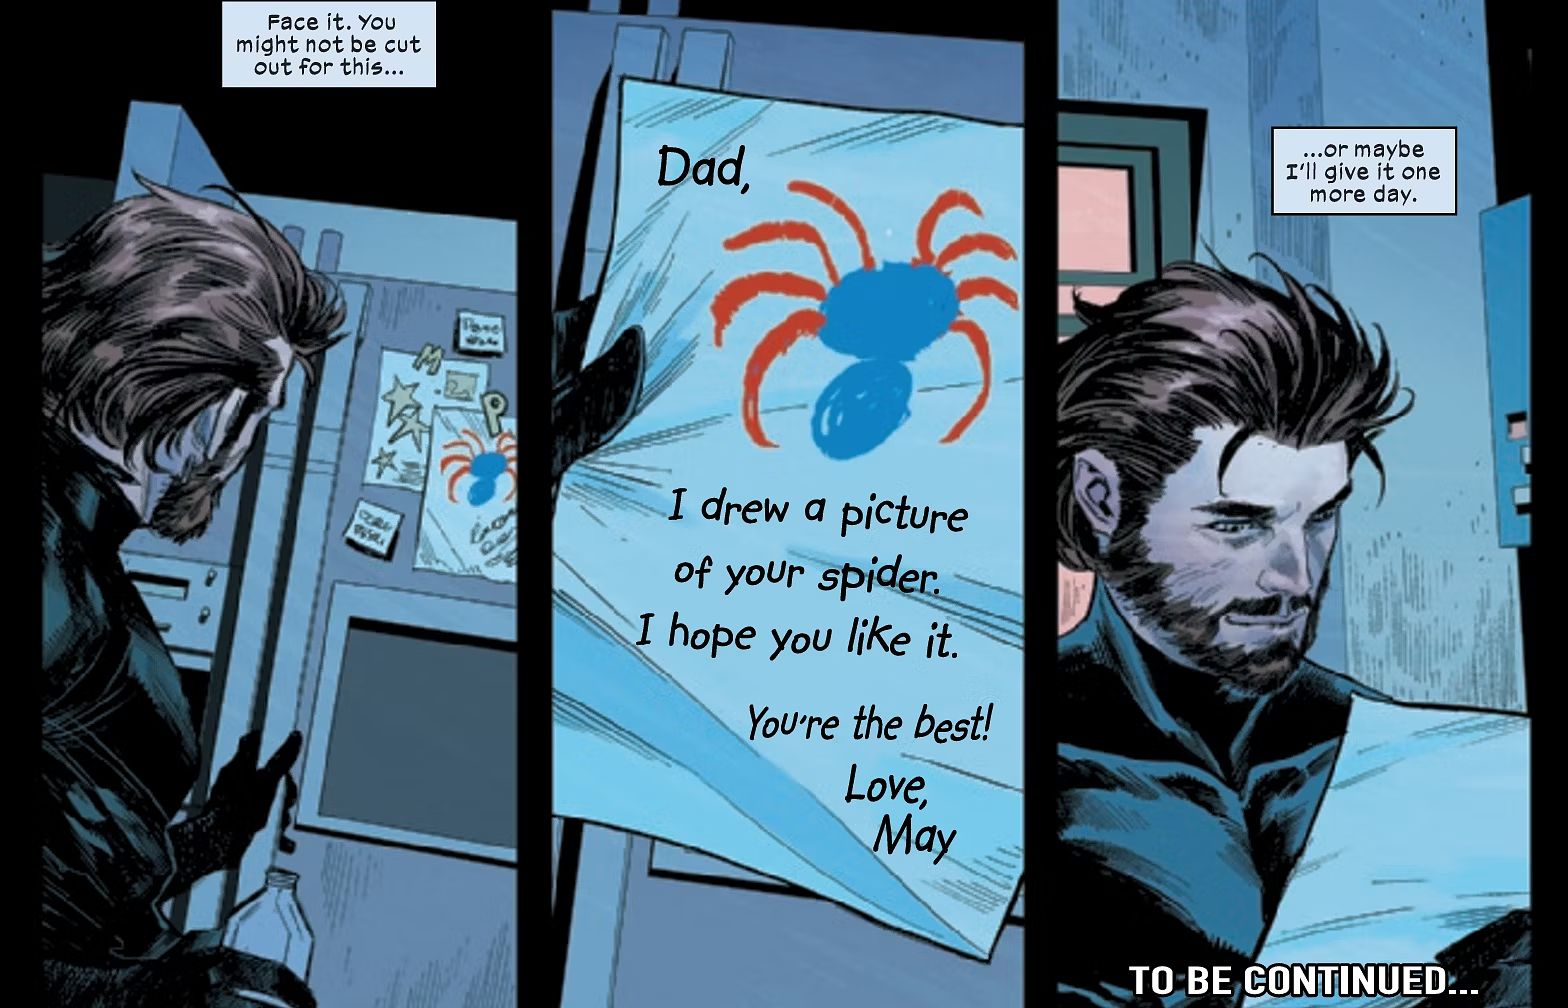 Ultimate Spider Man #2, Peter Parker se inspira em fantasias de sua filha May